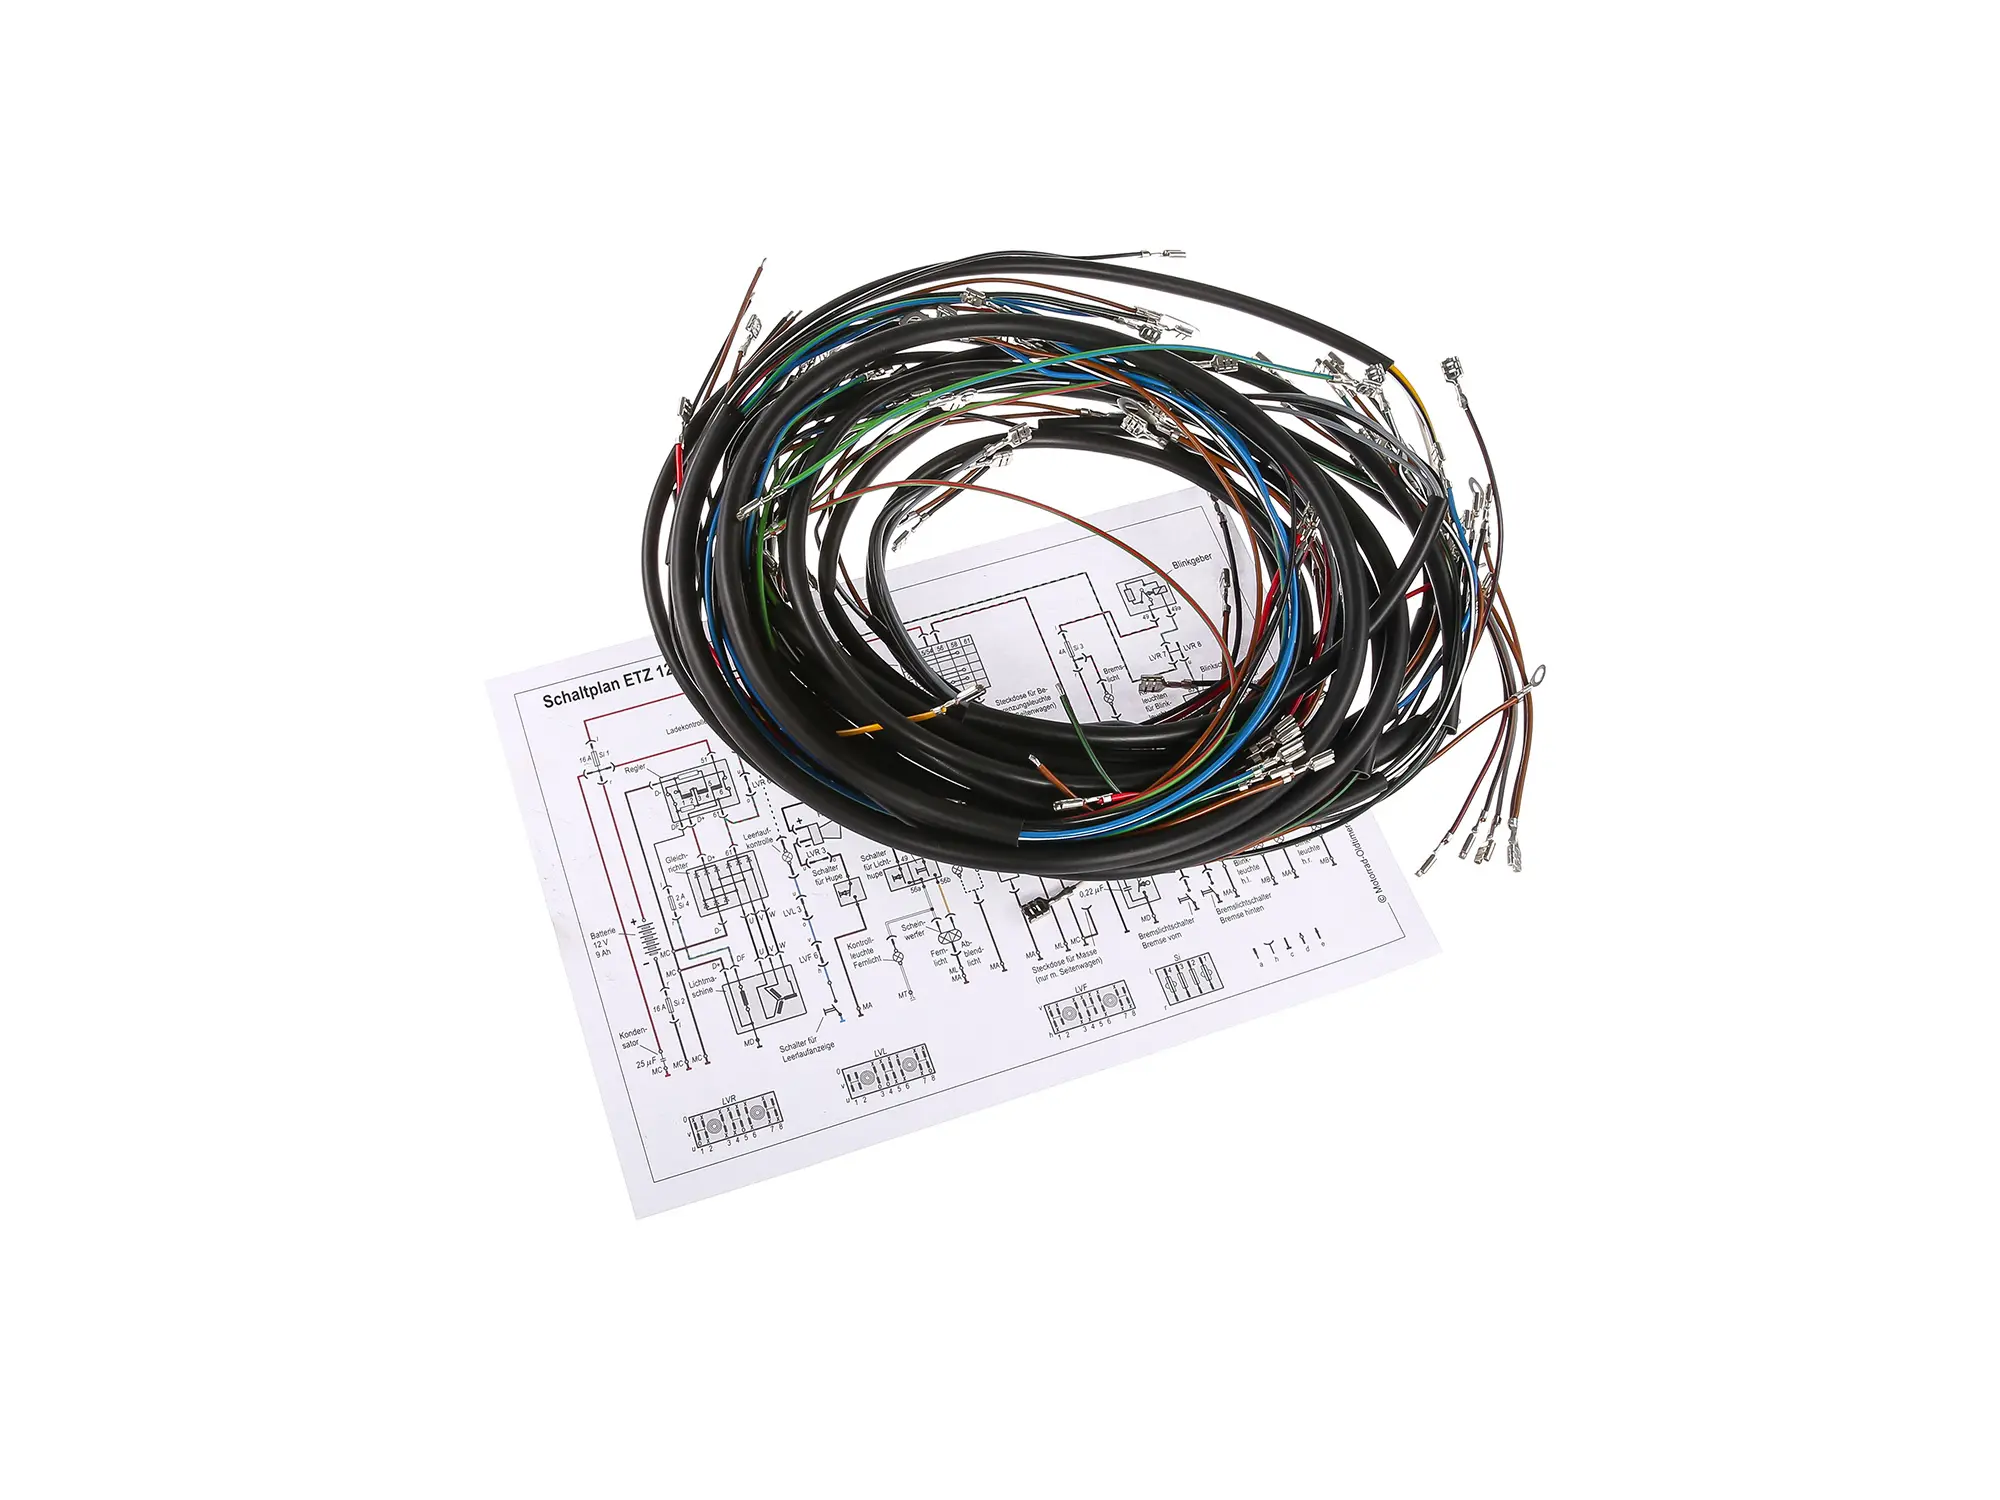 Kabelbaumset für ETZ 125,150,250 Standard, Art.-Nr.: 10003466 - Bild 1